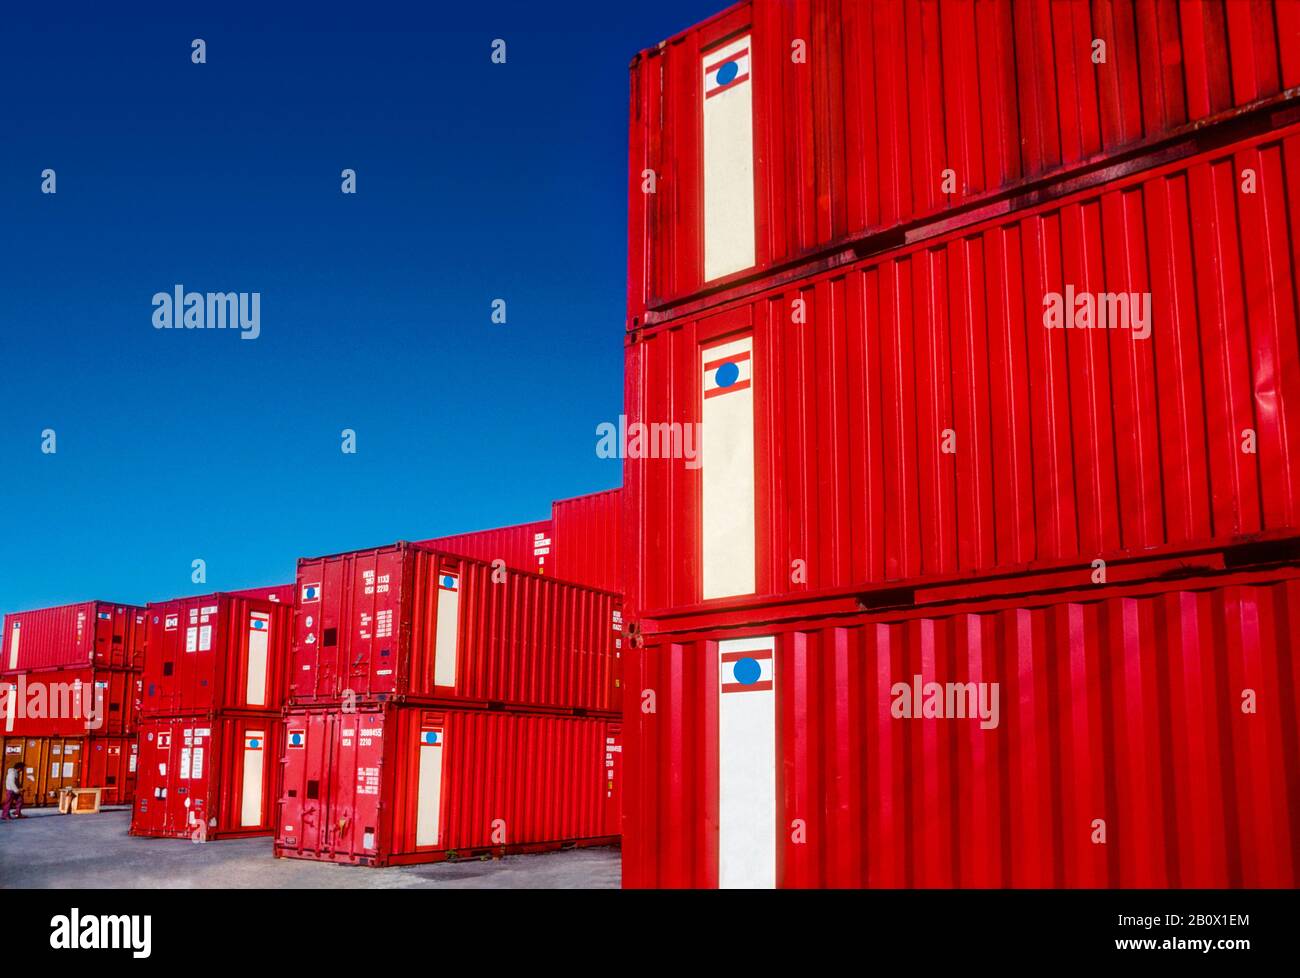 Formas gráficas en rojo brillante de contenedores apilados listos para su envío, Pyrmont, Sydney, Nueva Gales del Sur, Australia Foto de stock